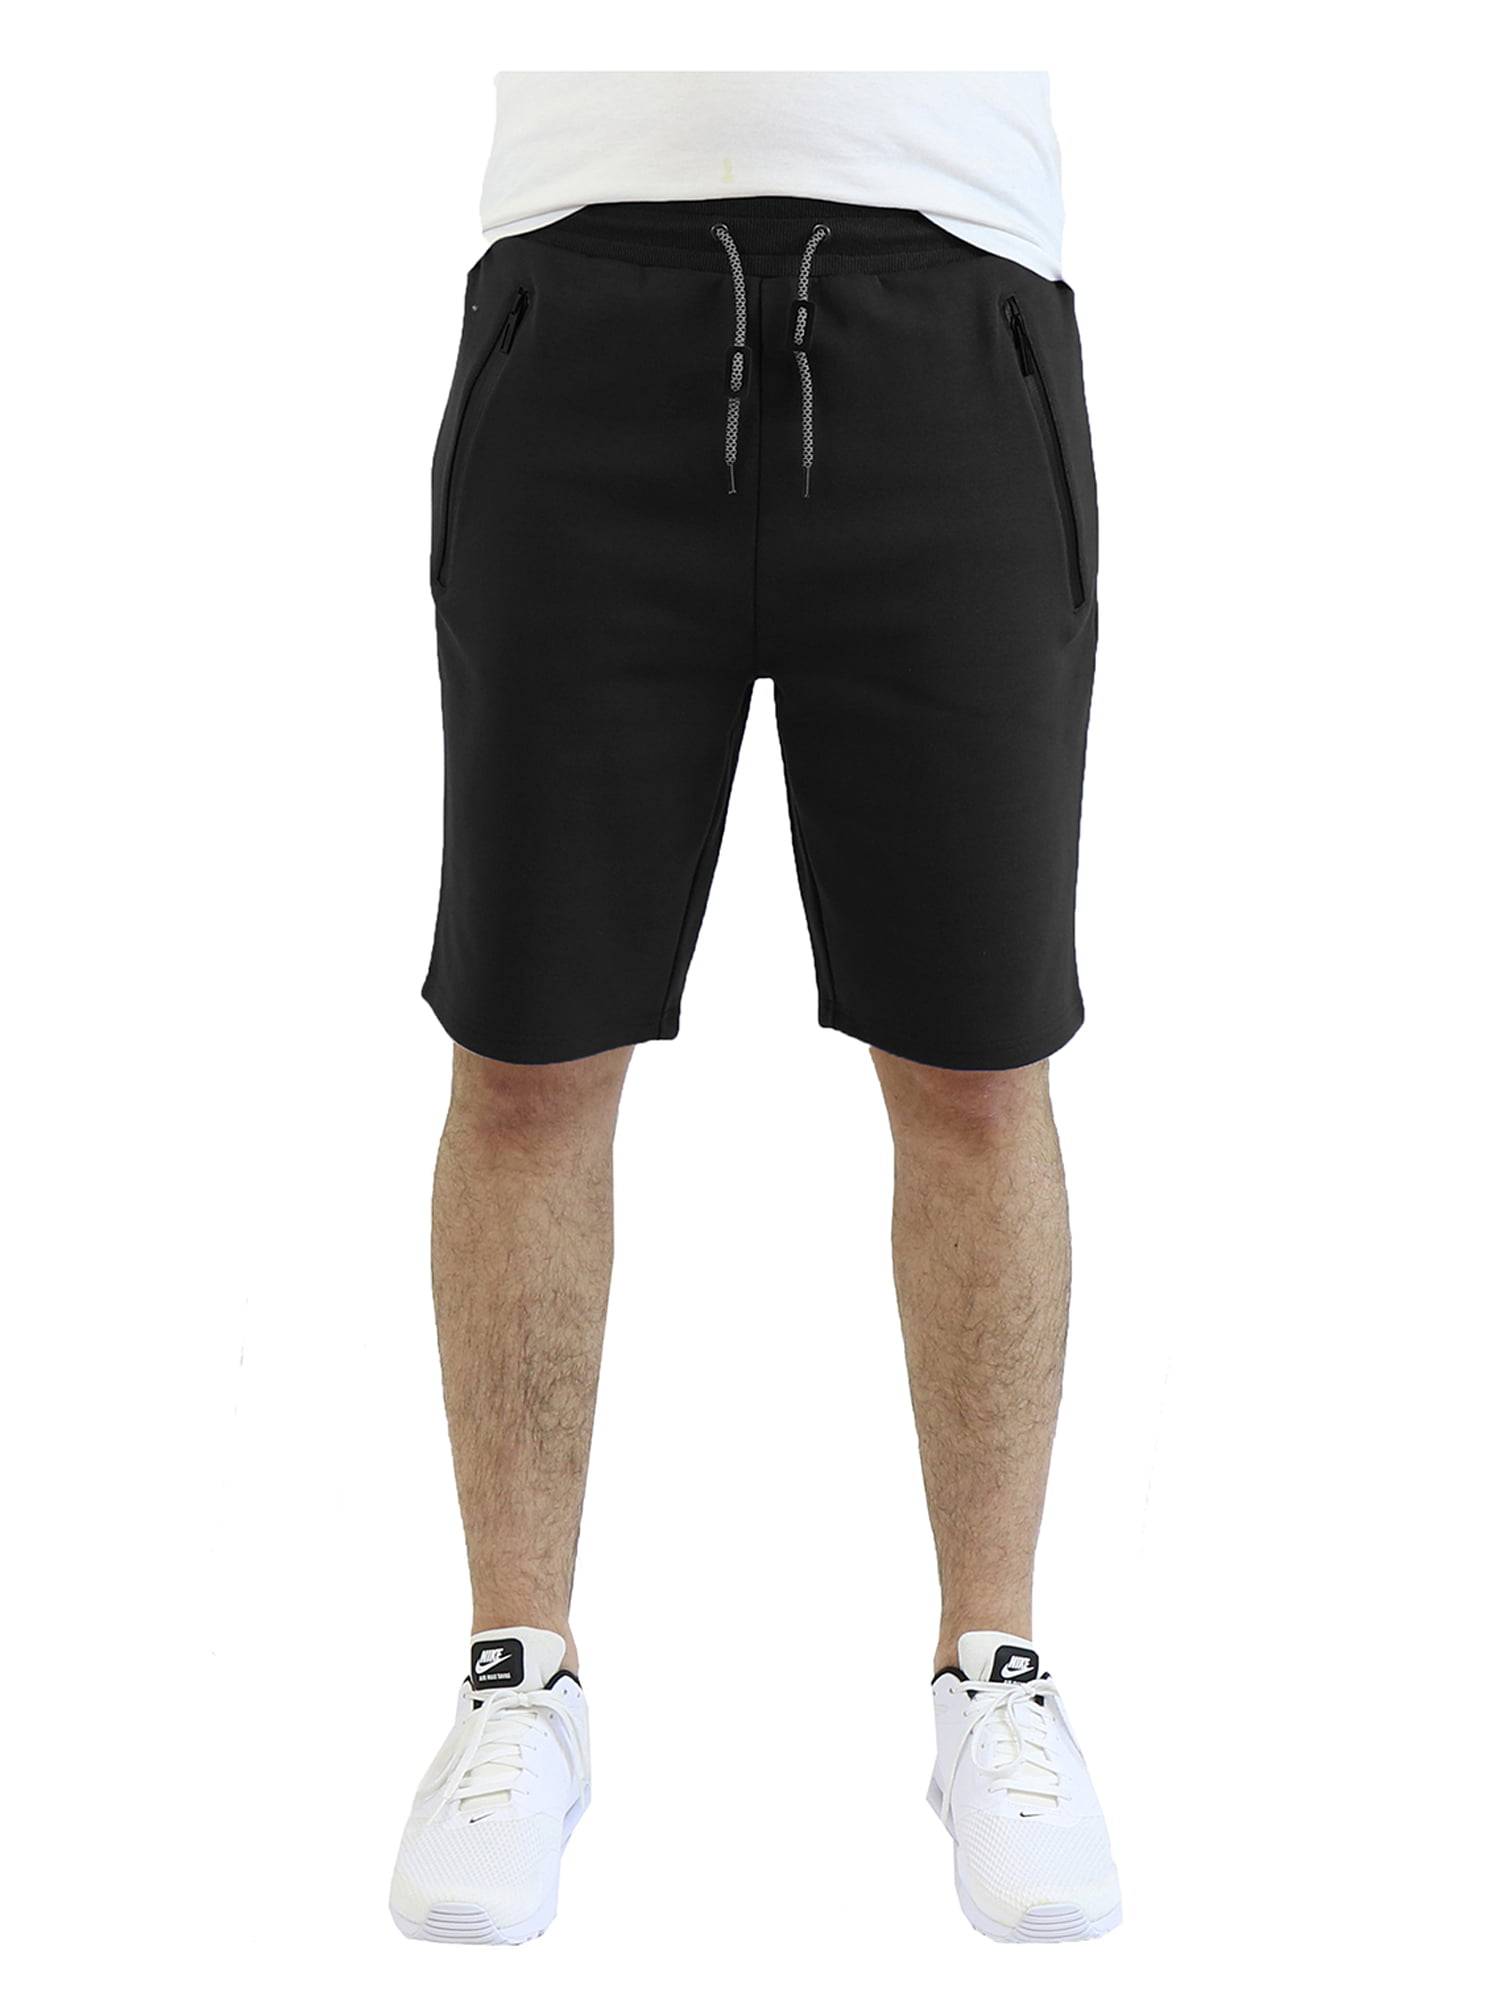 Men's Tech Shorts With Waterproof Zipper Pockets - Walmart.com